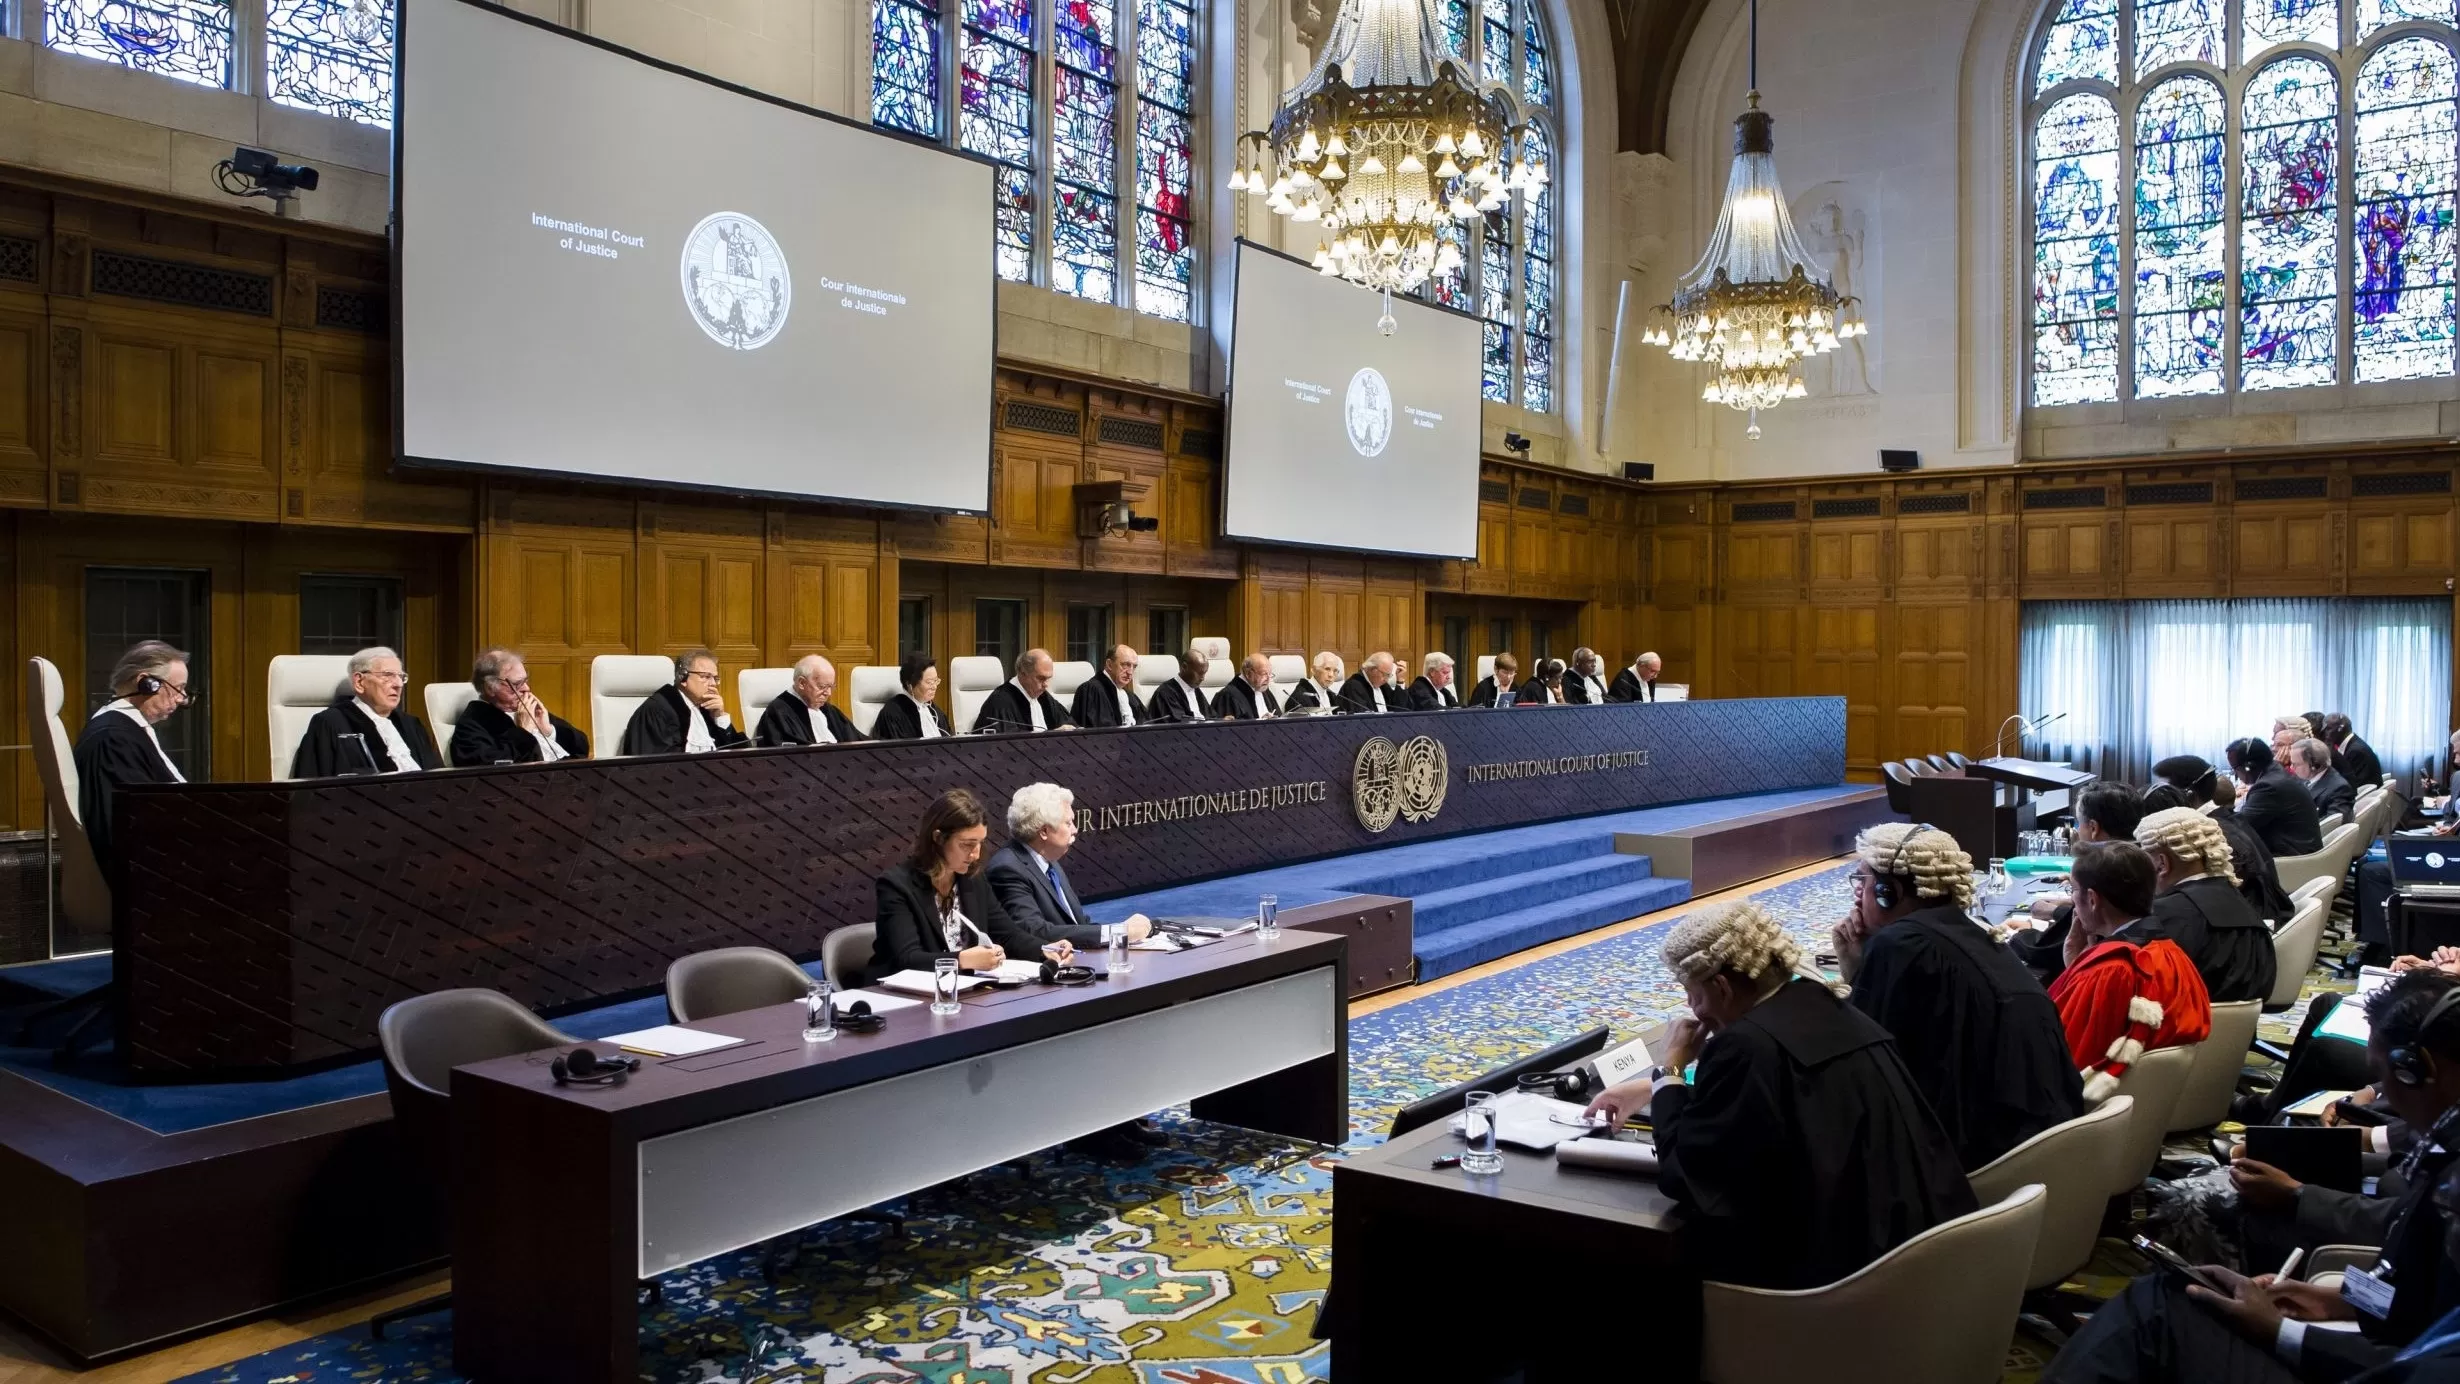 Հաագայի դատարանի հրատապ միջոցներն իրավաբանորեն պարտադիր են, բայց Ադրբեջանը չի կատարել. ՀՀ մշտական ներկայացուցիչ